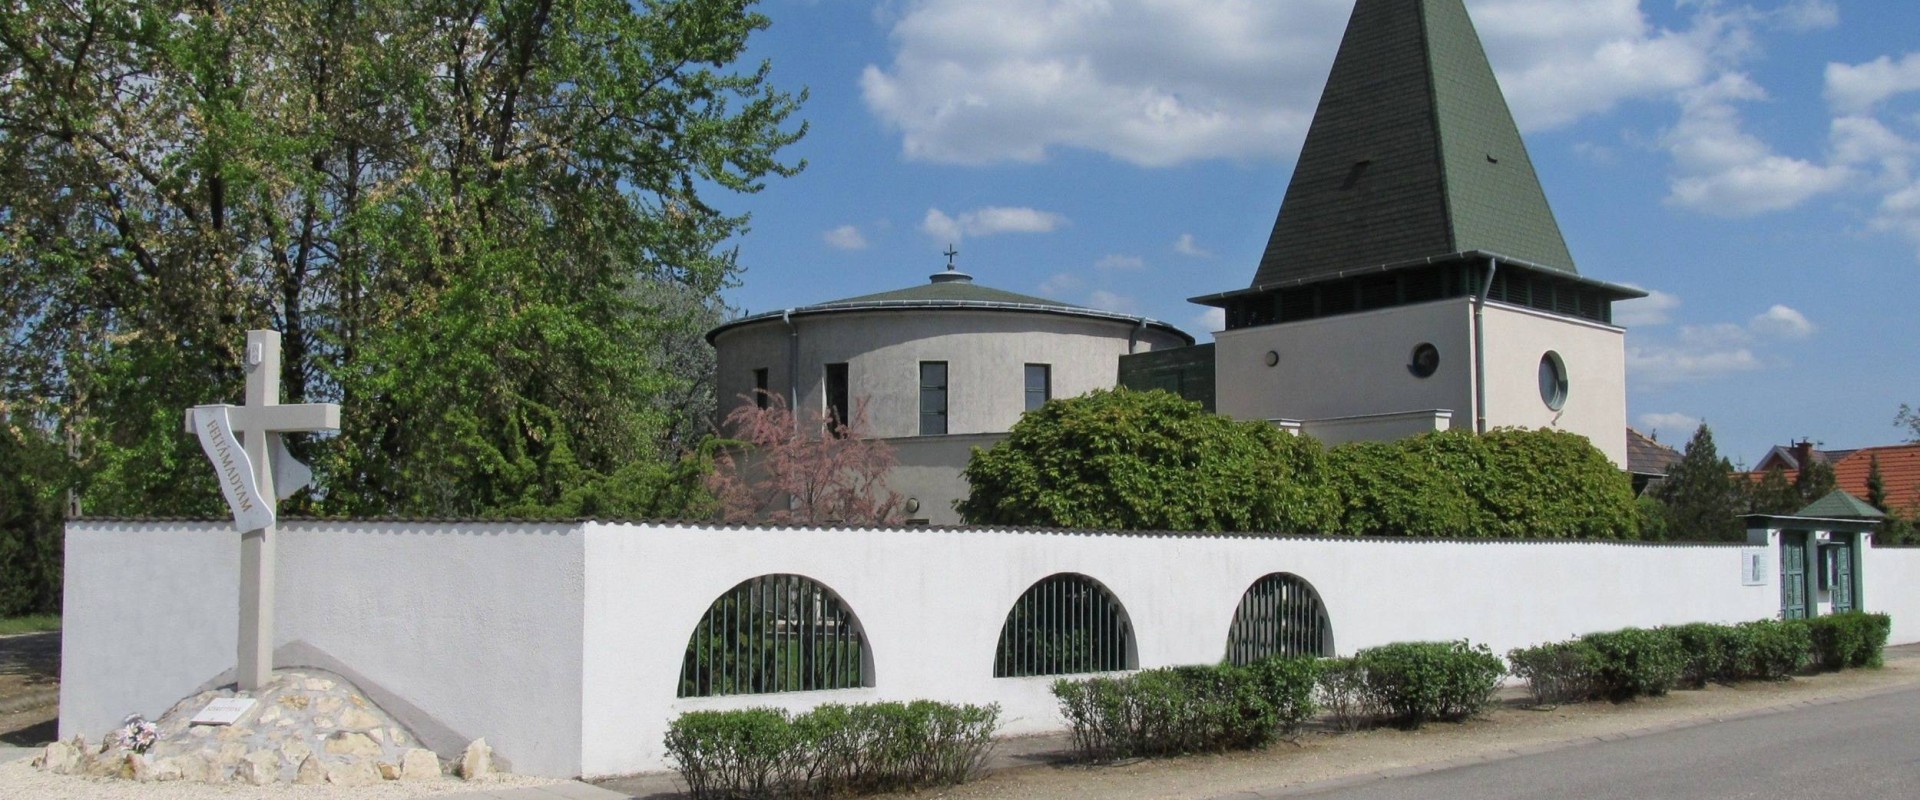 Felsőpakony Református Templom